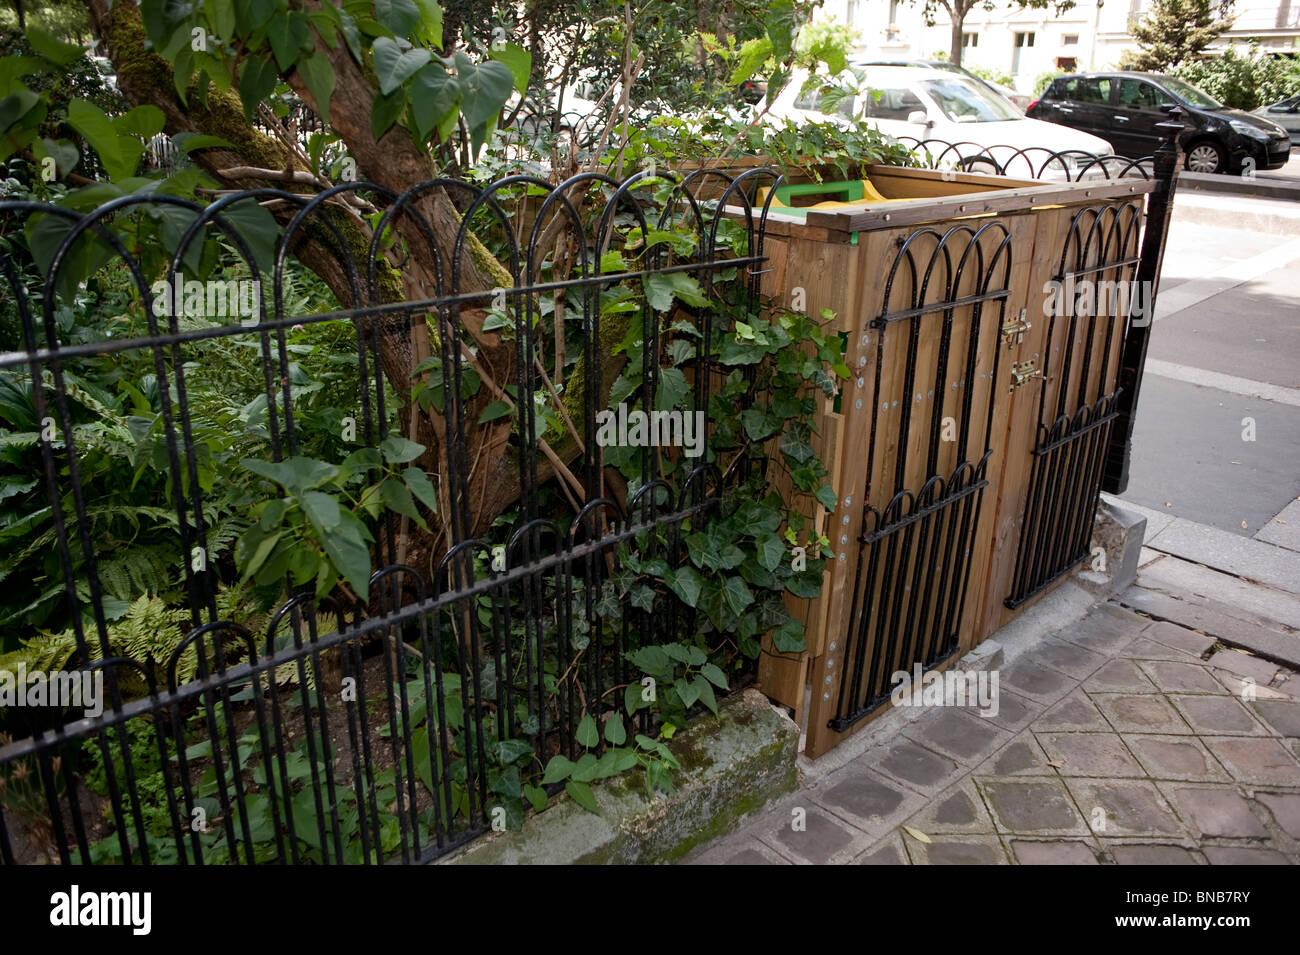 Jardin d'appartement, Paris, France, recyclage des poubelles, poubelles en bois, Jardin, scène de rue Banque D'Images